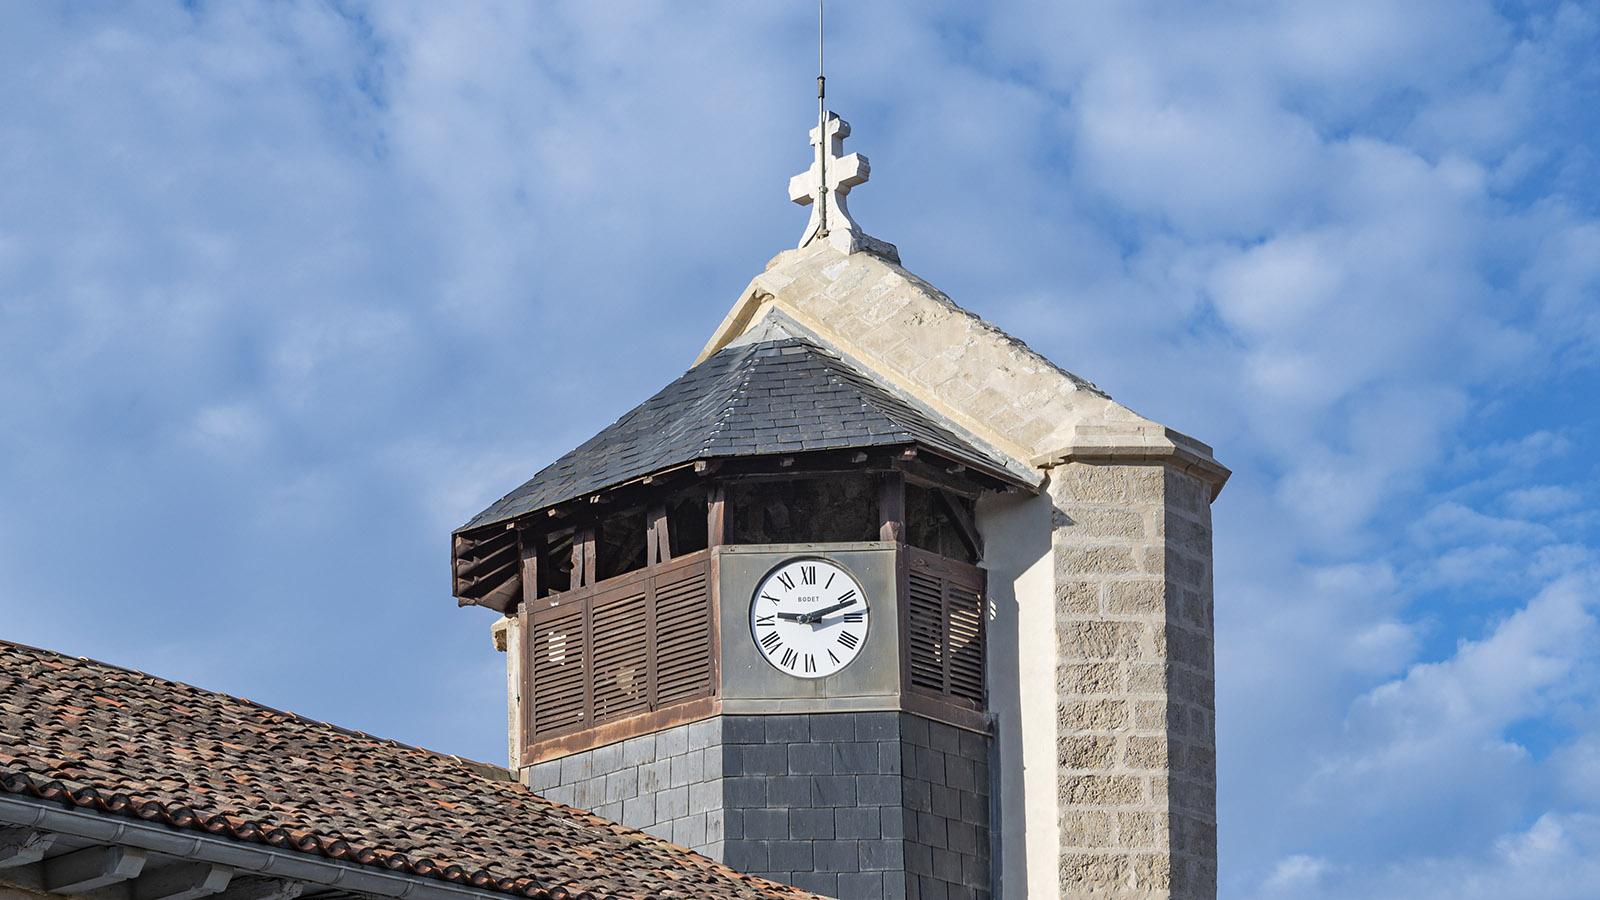 Um den Stürmen zu trotzen, wurde der hölzerne Kirchturm mit einem steinernen Vorbau verstärkt. Foto: Hilke Maunder